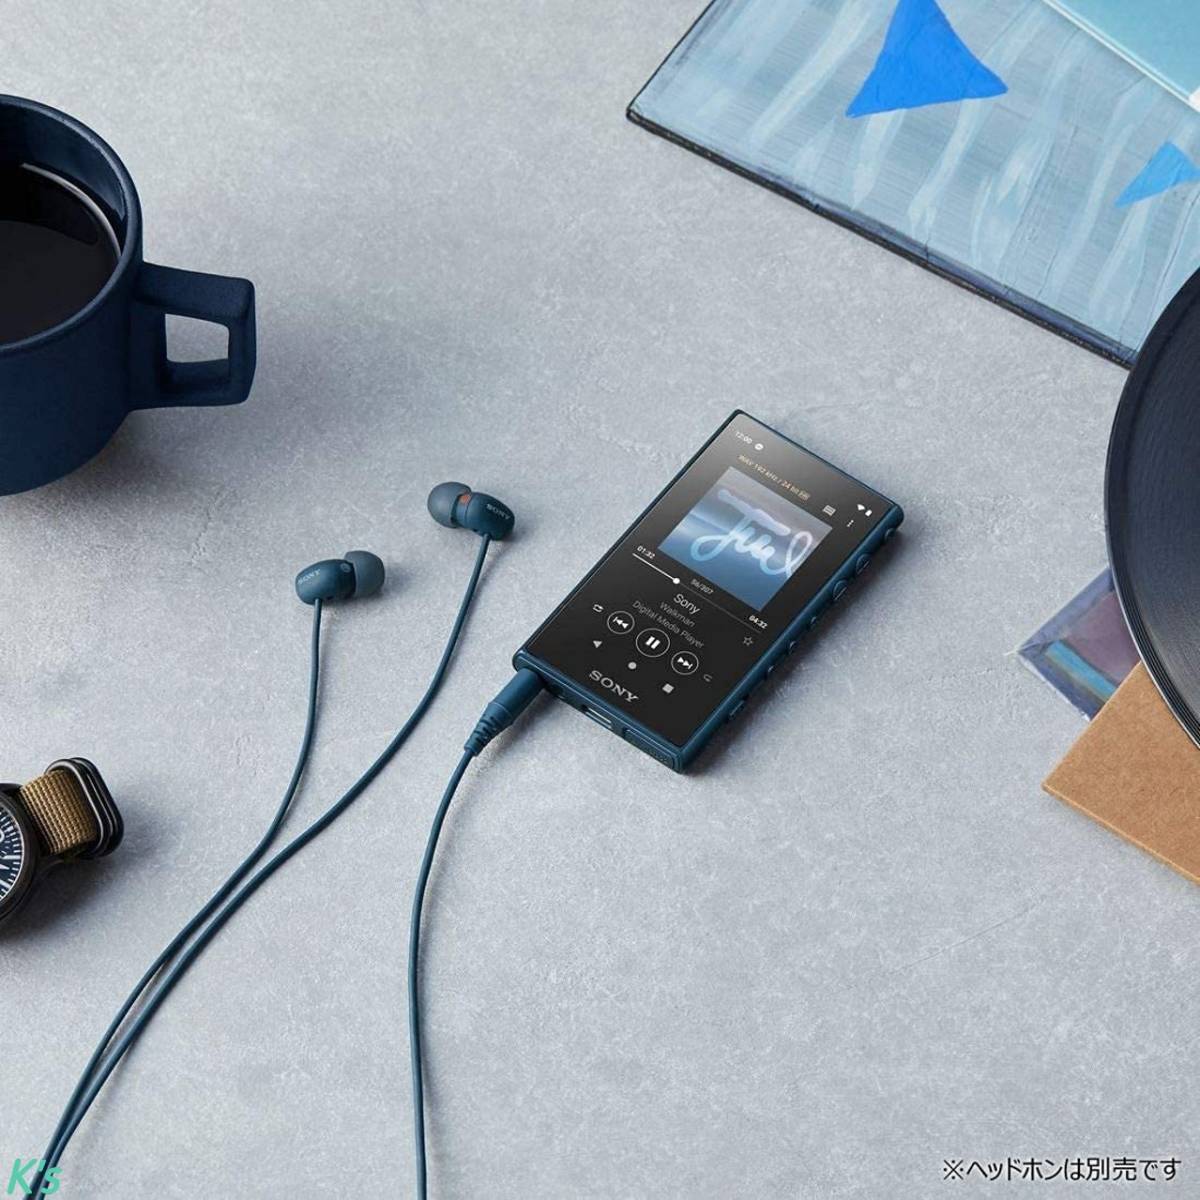 激安通販 Reality 360 16GB ブルー Audio再生可能モデル ウォークマン ソニー MP3プレーヤー microSD対応 android搭載 bluetooth対応 ハイレゾ対応 本体